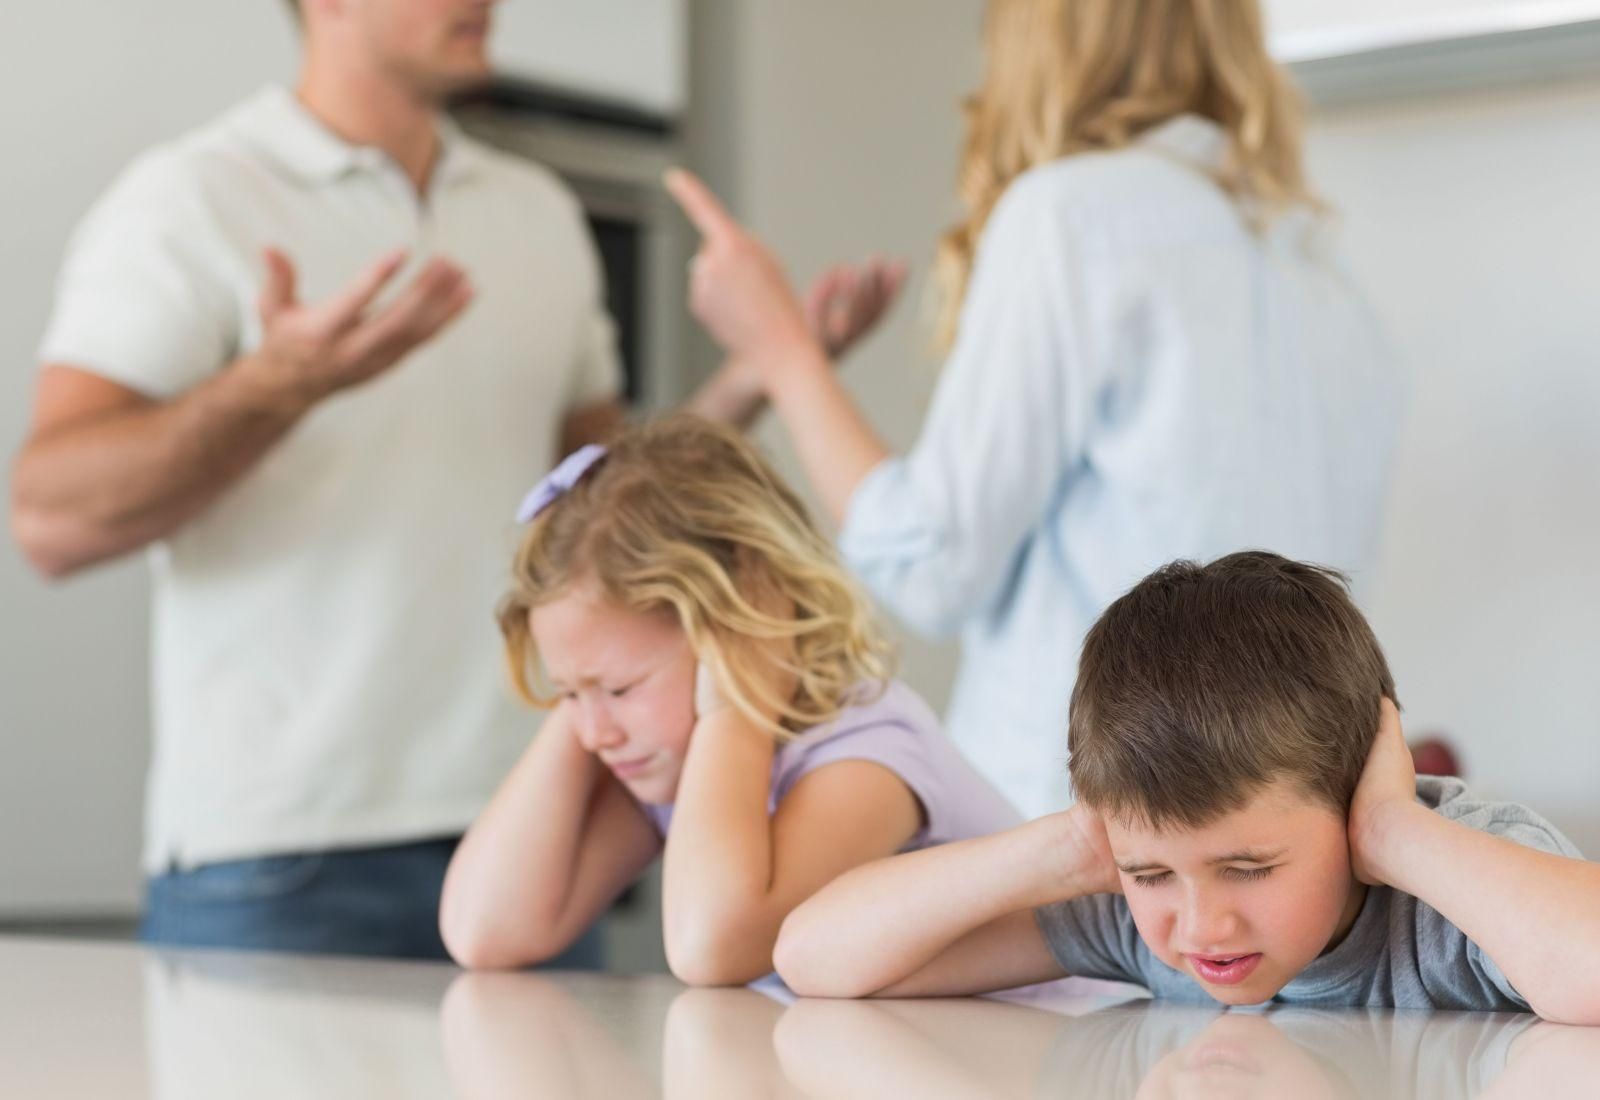 Детские психологические травмы могут иметь серьезные последствия: несколько советов родителям